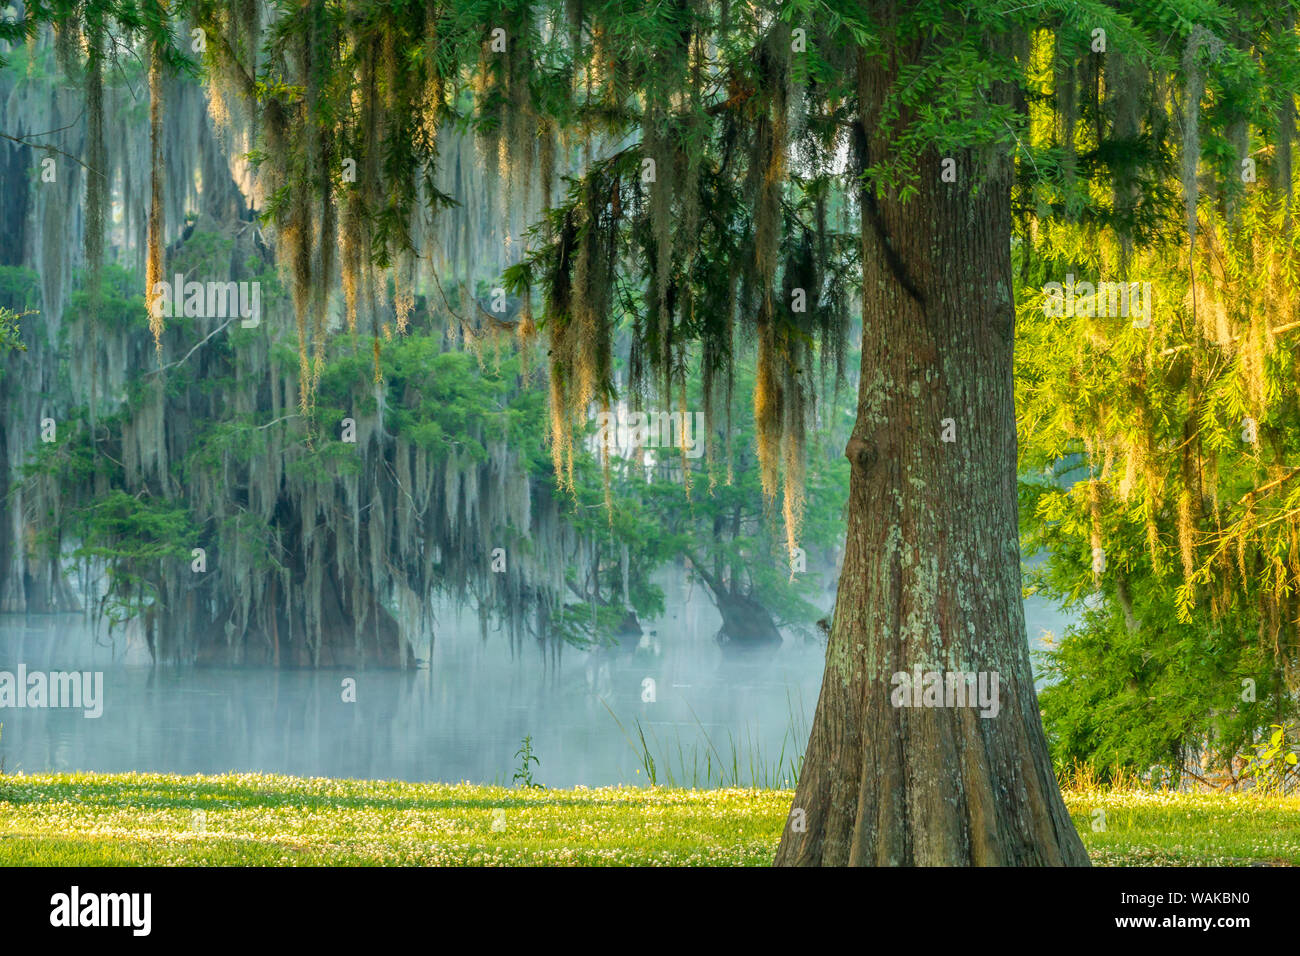 USA, Louisiane, le lac Martin. Lever de soleil brumeux sur le marais. En tant que crédit : Cathy et Gordon Illg / Jaynes Gallery / DanitaDelimont.com Banque D'Images